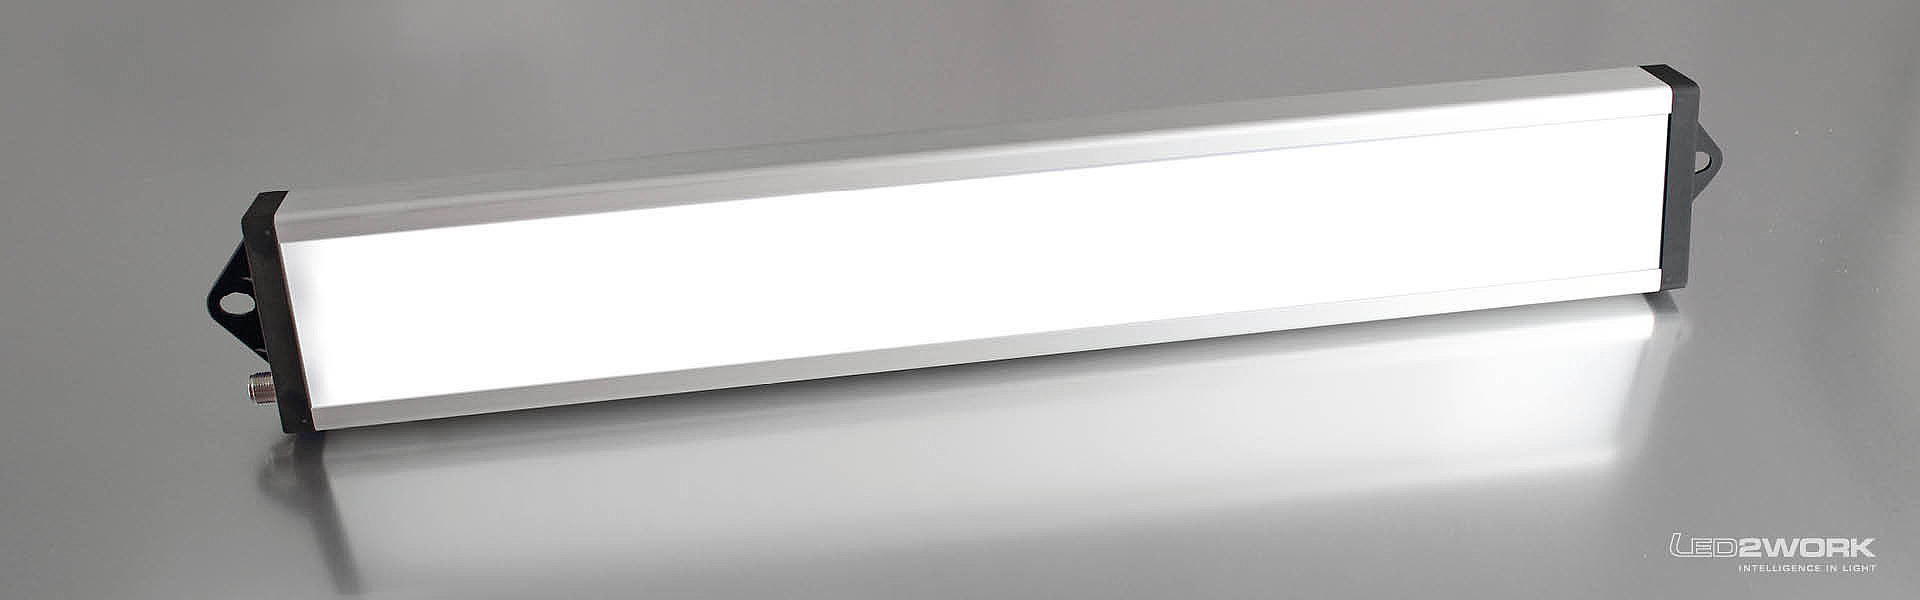 Illustration du luminaire LED pour poste de travail | luminaire système LED | luminaire de signalisation LED UNILED SL RGB-W de LED2WORK